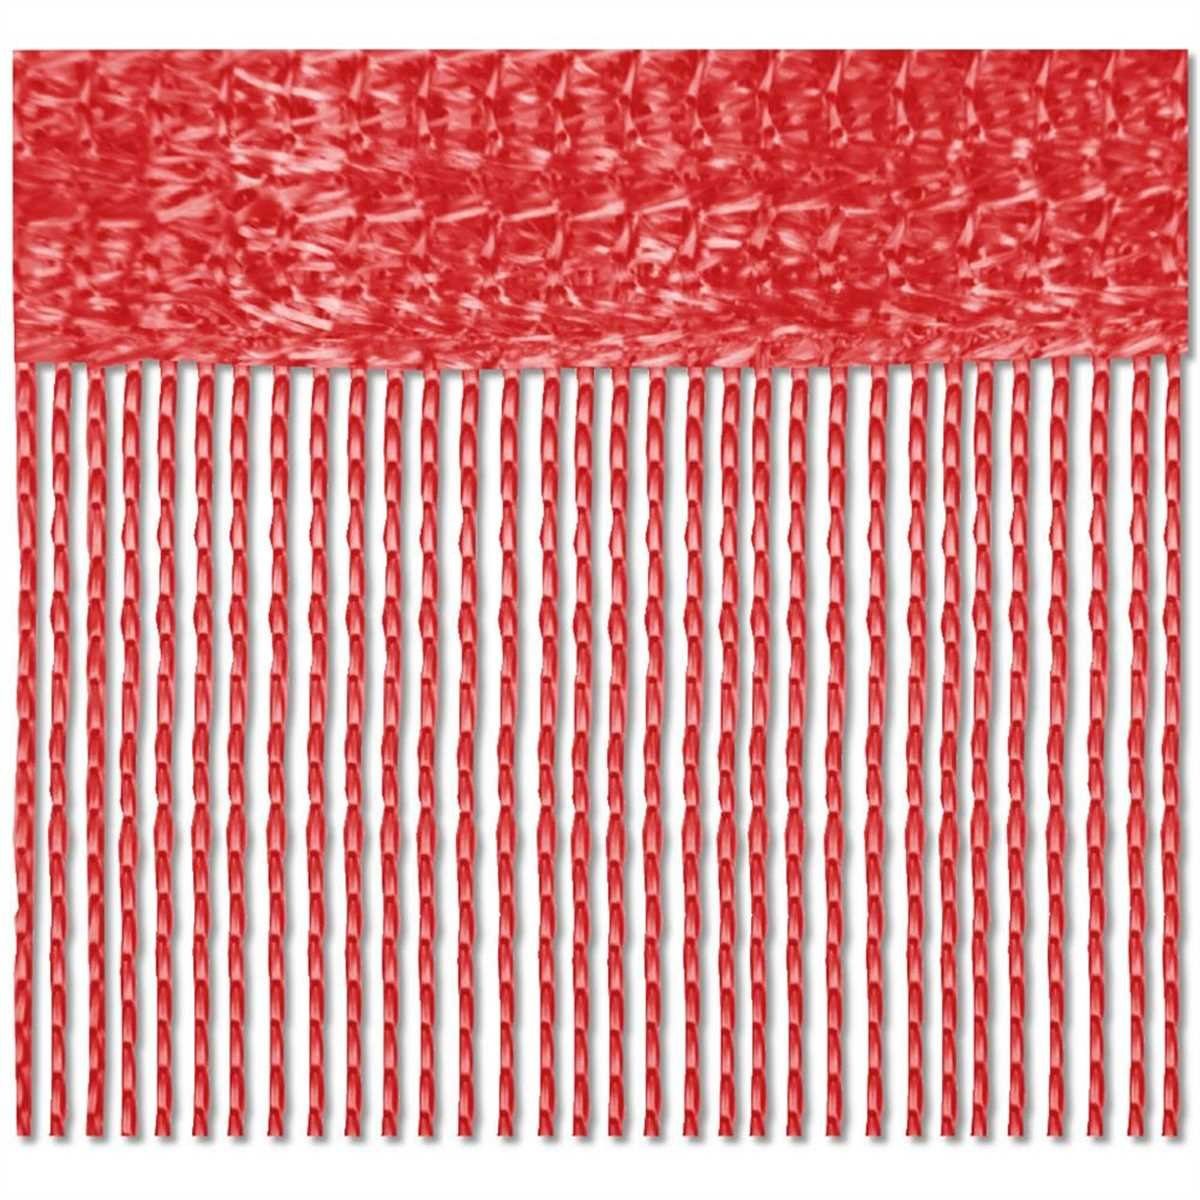 Fadenvorhang, Bestlivings, Stangendurchzug (2 St), halbtransparent, Fadengardinen mit Stangendurchzug, Vorhang in vers. Farben und Größen Rot